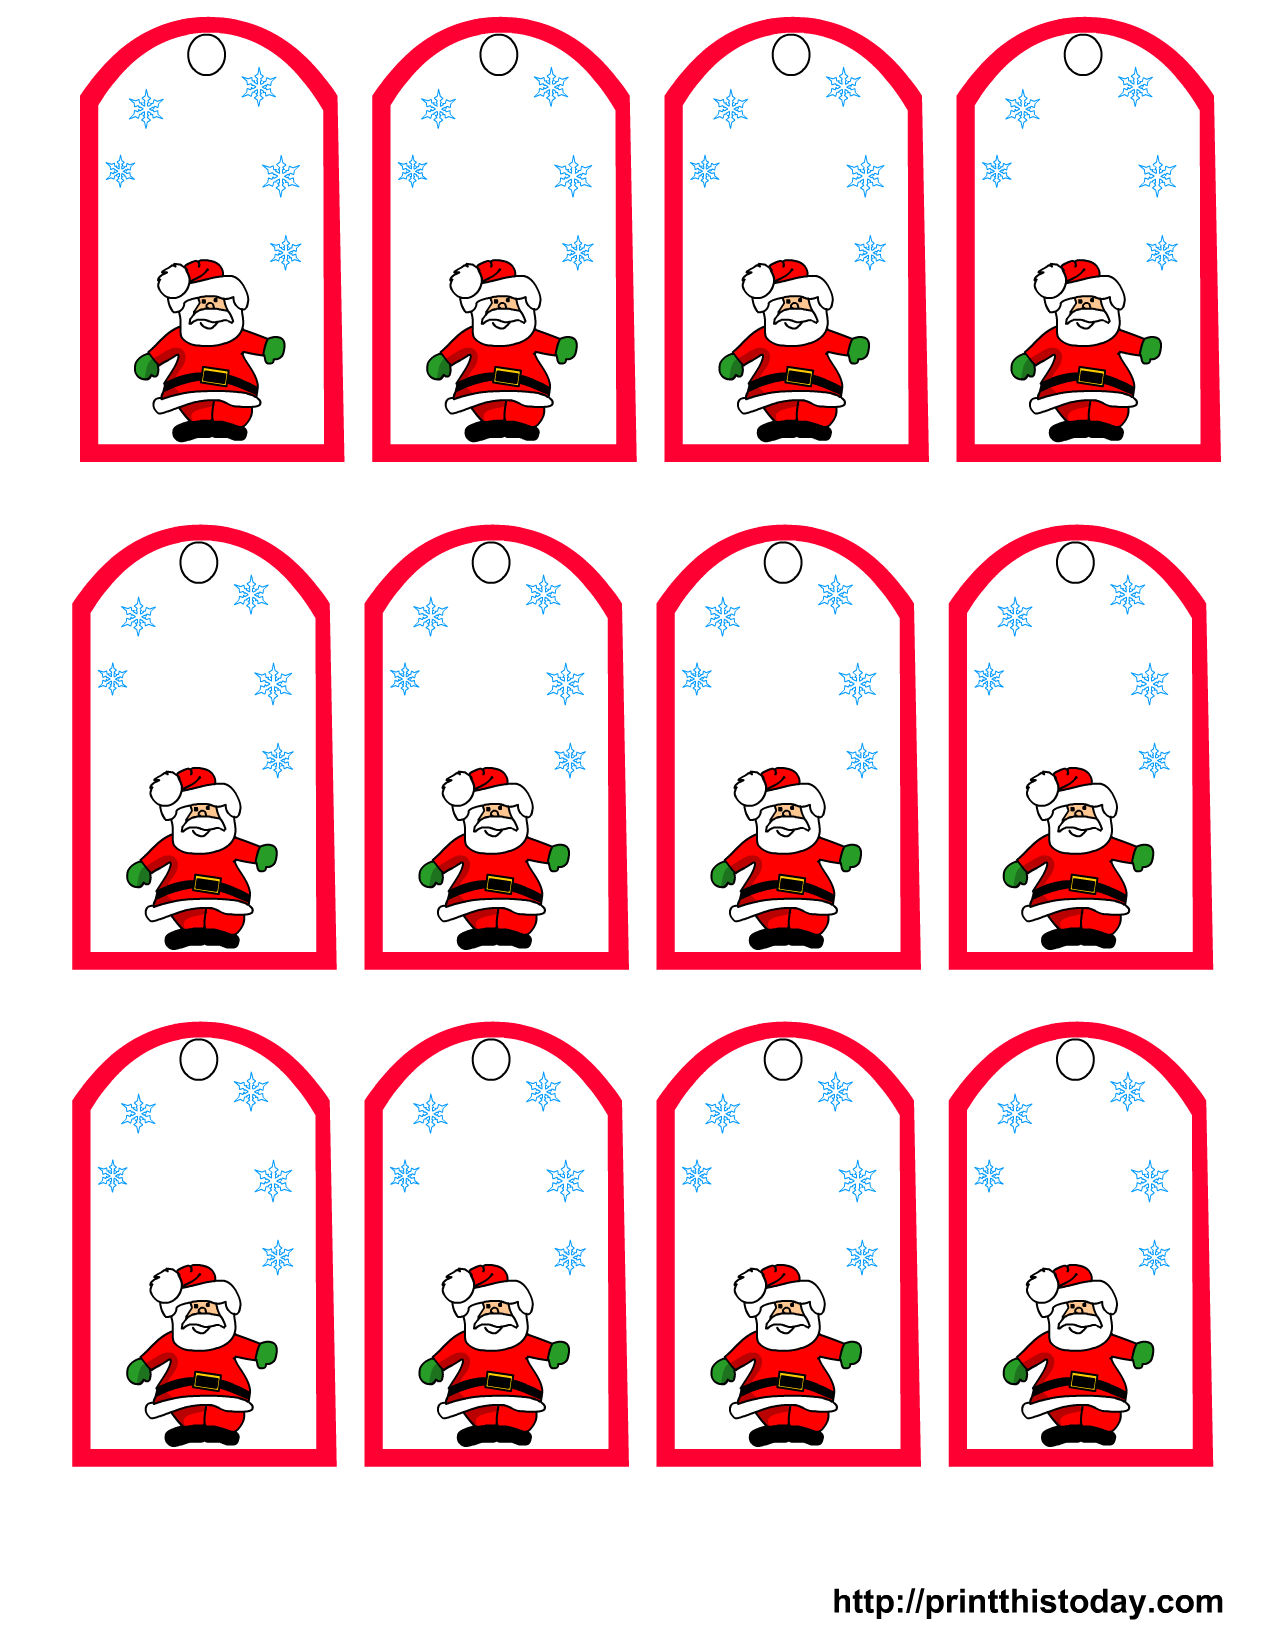 Santa Claus And Snowflakes, Free Printable Christmas Gift Tags - Free Printable Editable Christmas Gift Tags